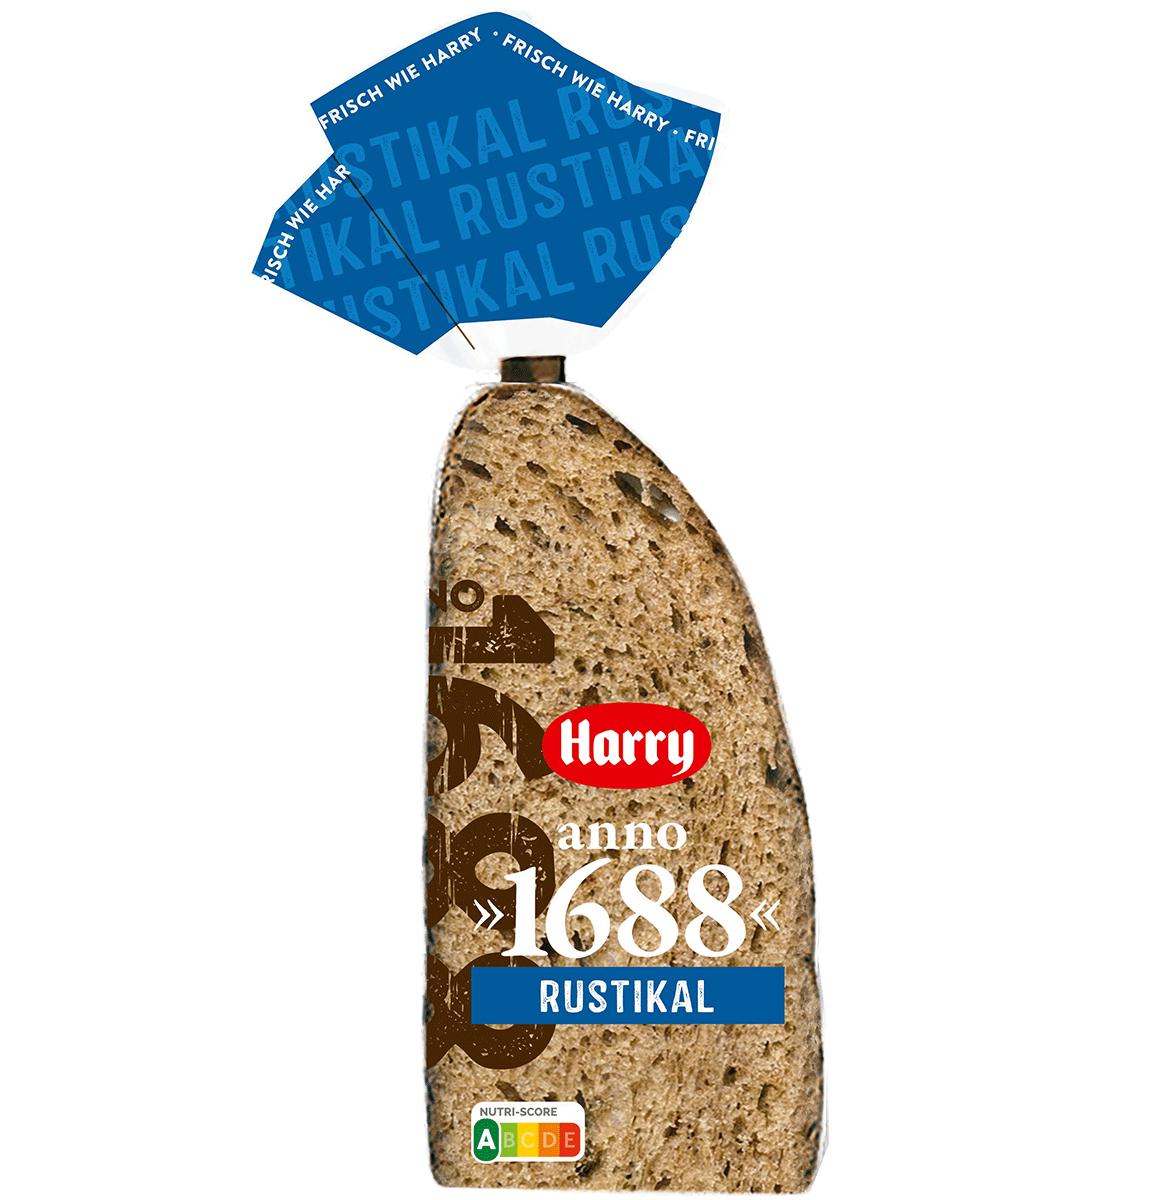 Besteller 2020: Harry-Brot anno »1688« Rustikal